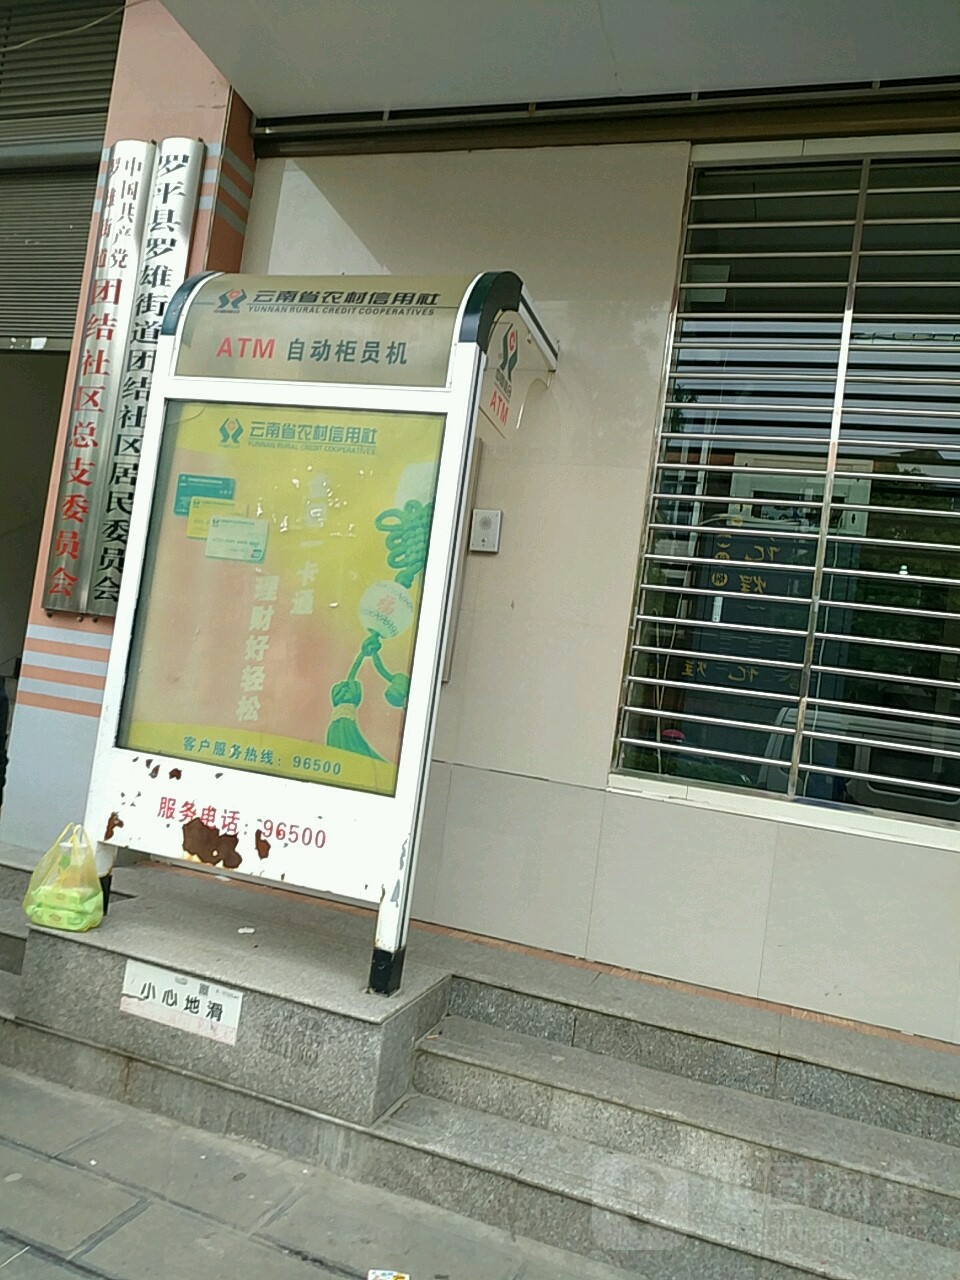 云南省农业信用社ATM